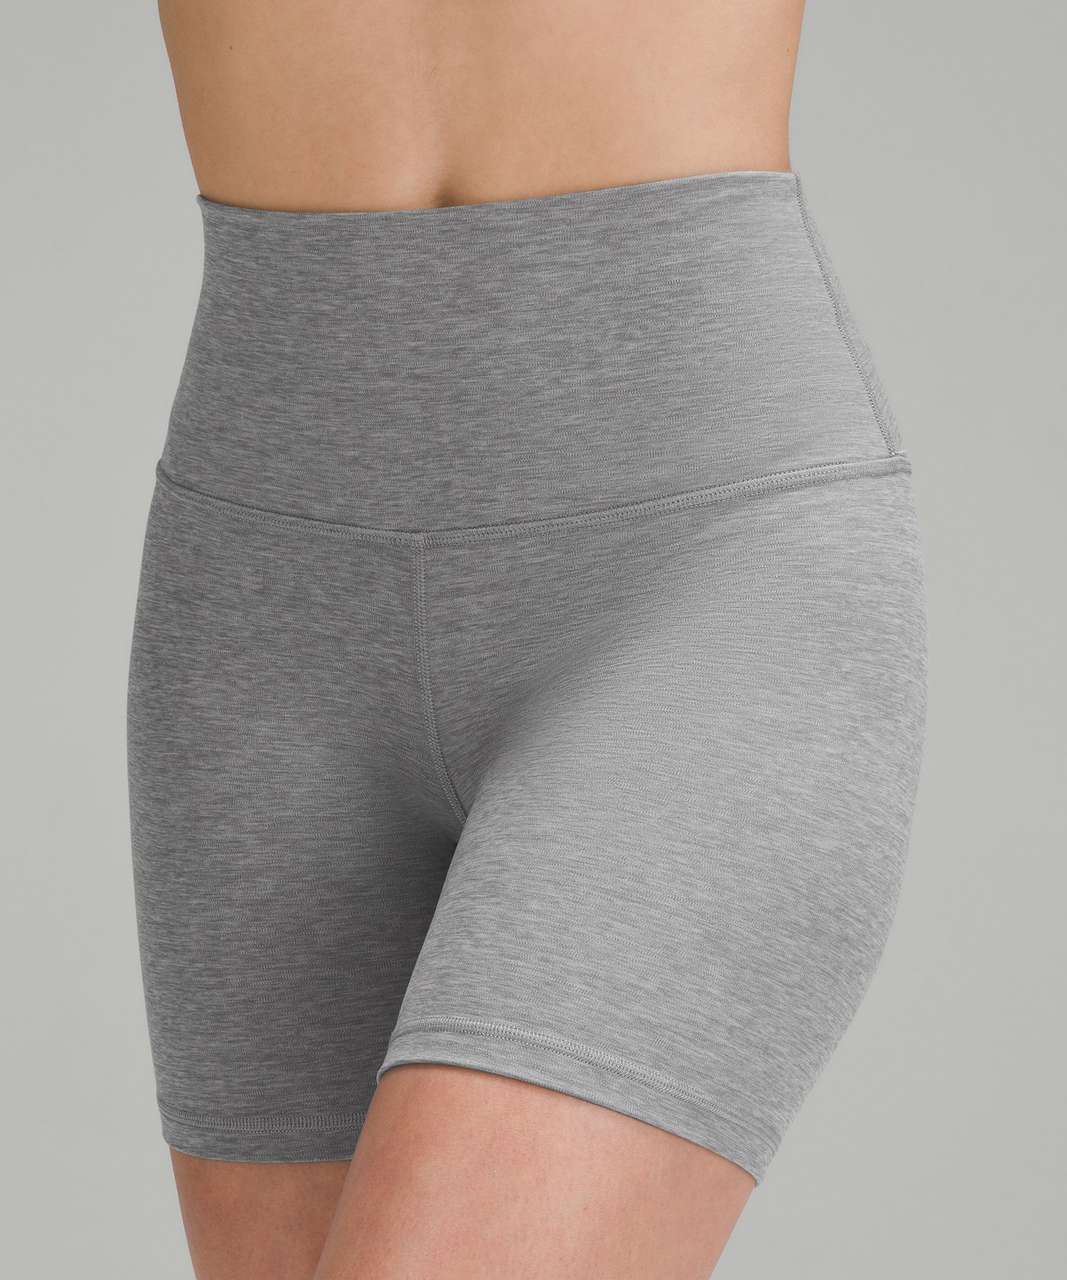 Lululemon Shorts (Lot of 2) Grey, Size 6